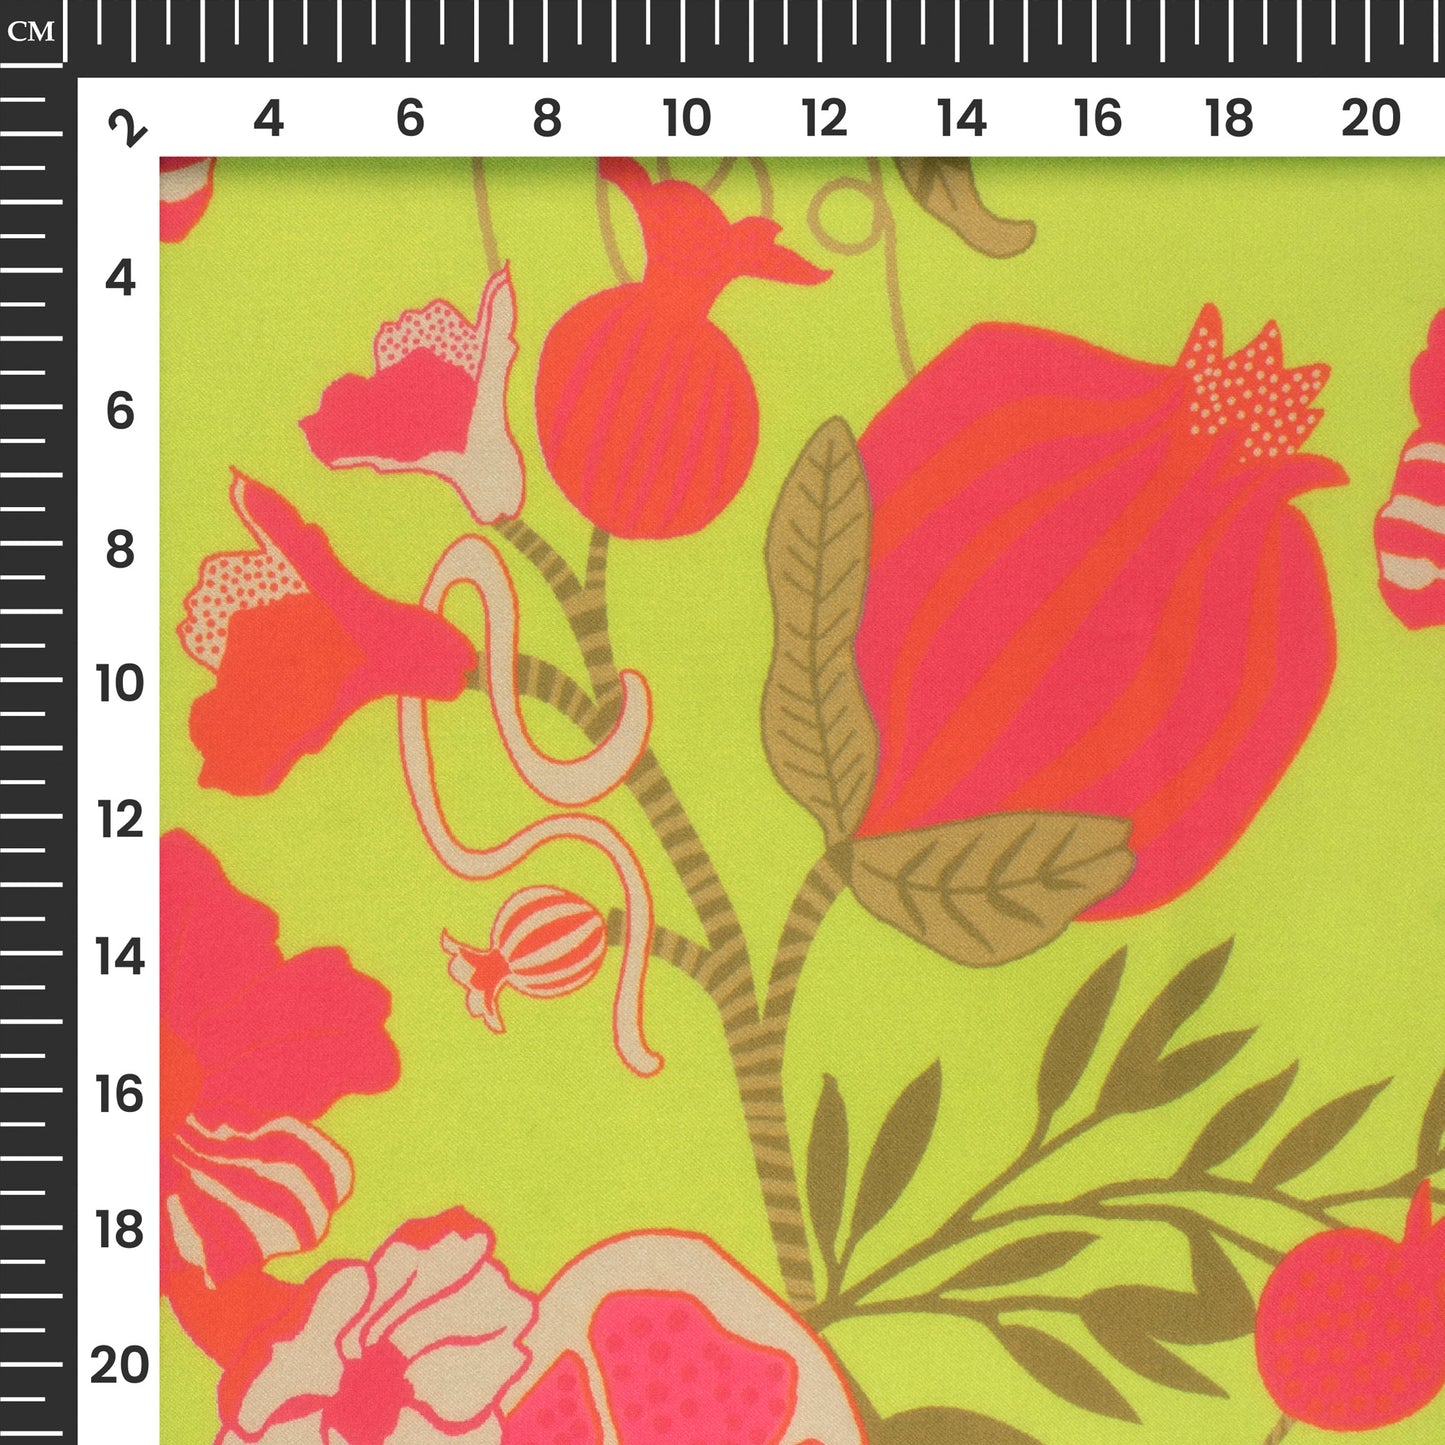 Mint Green Floral Digital Print Georgette Satin Fabric